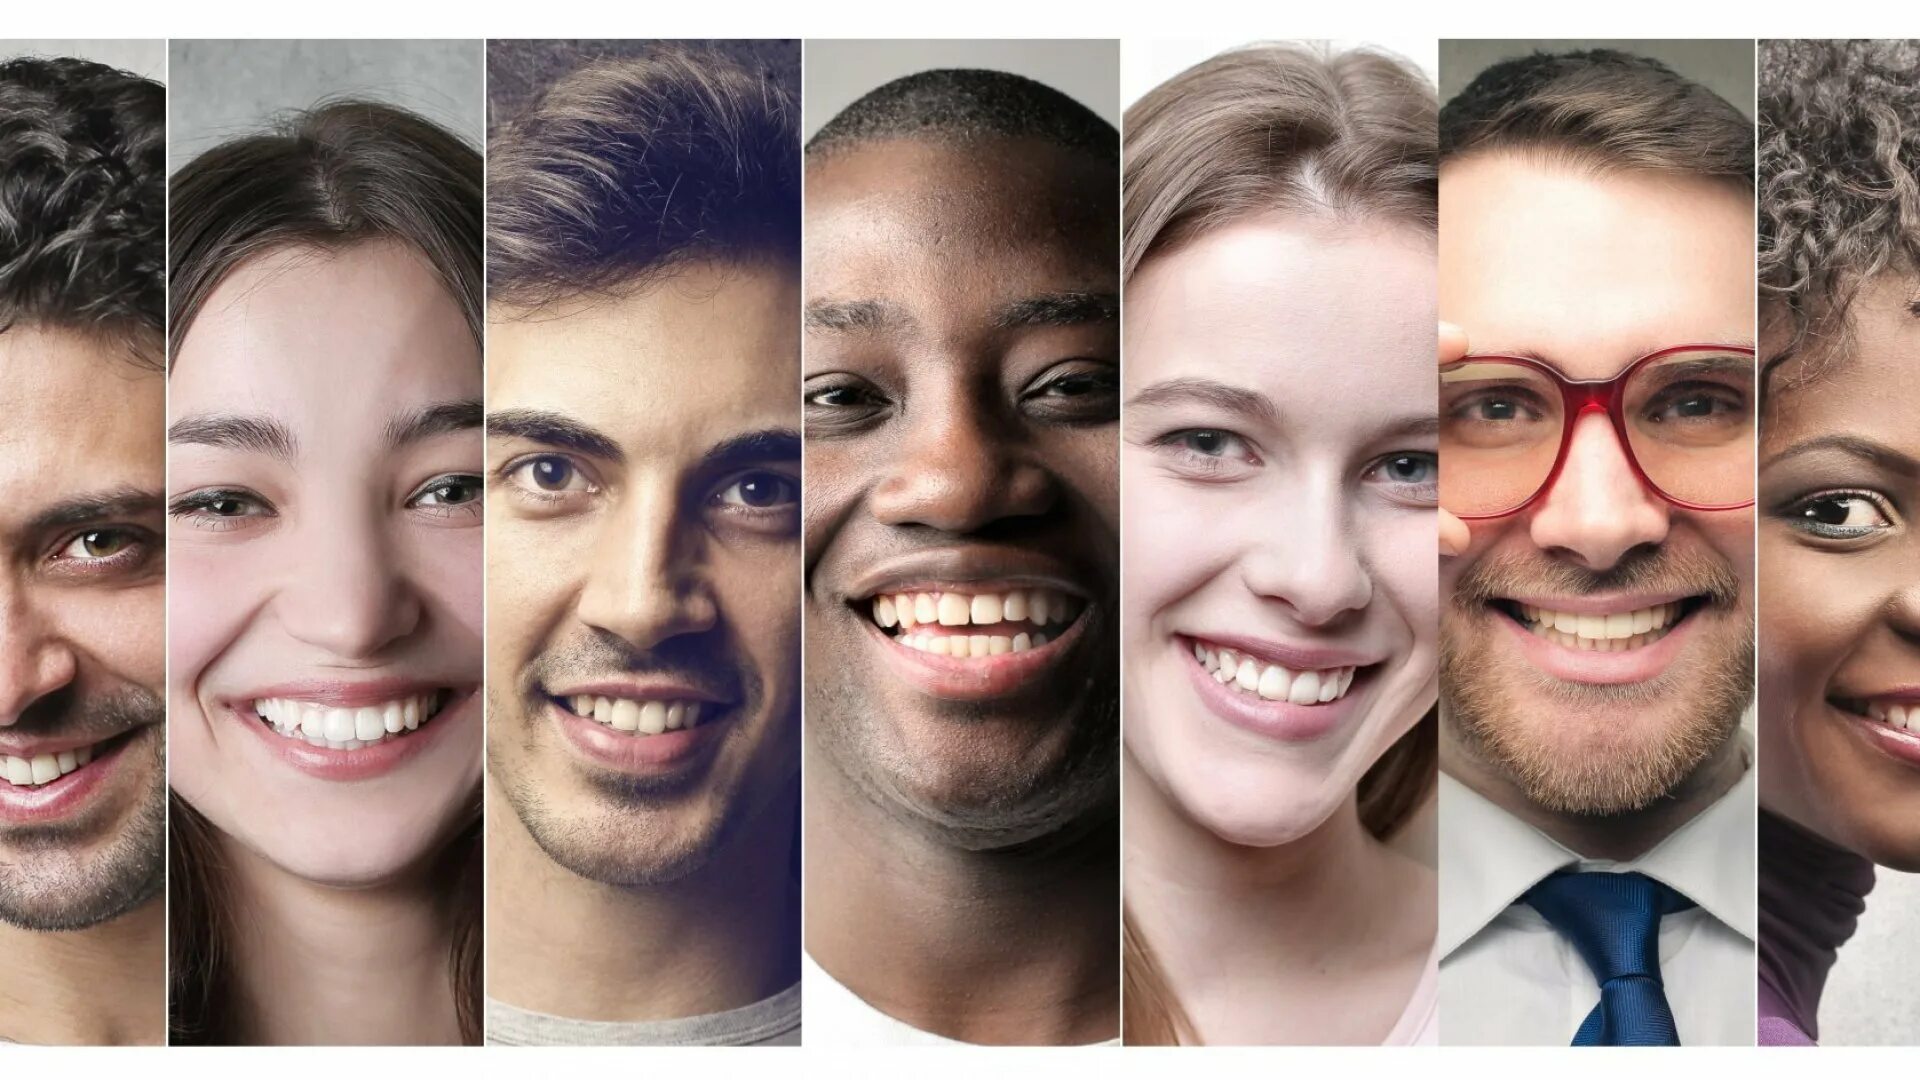 Три фотографии в одну. Улыбка человека. Люди разных рас. Разные лица людей. Улыбки разных людей.